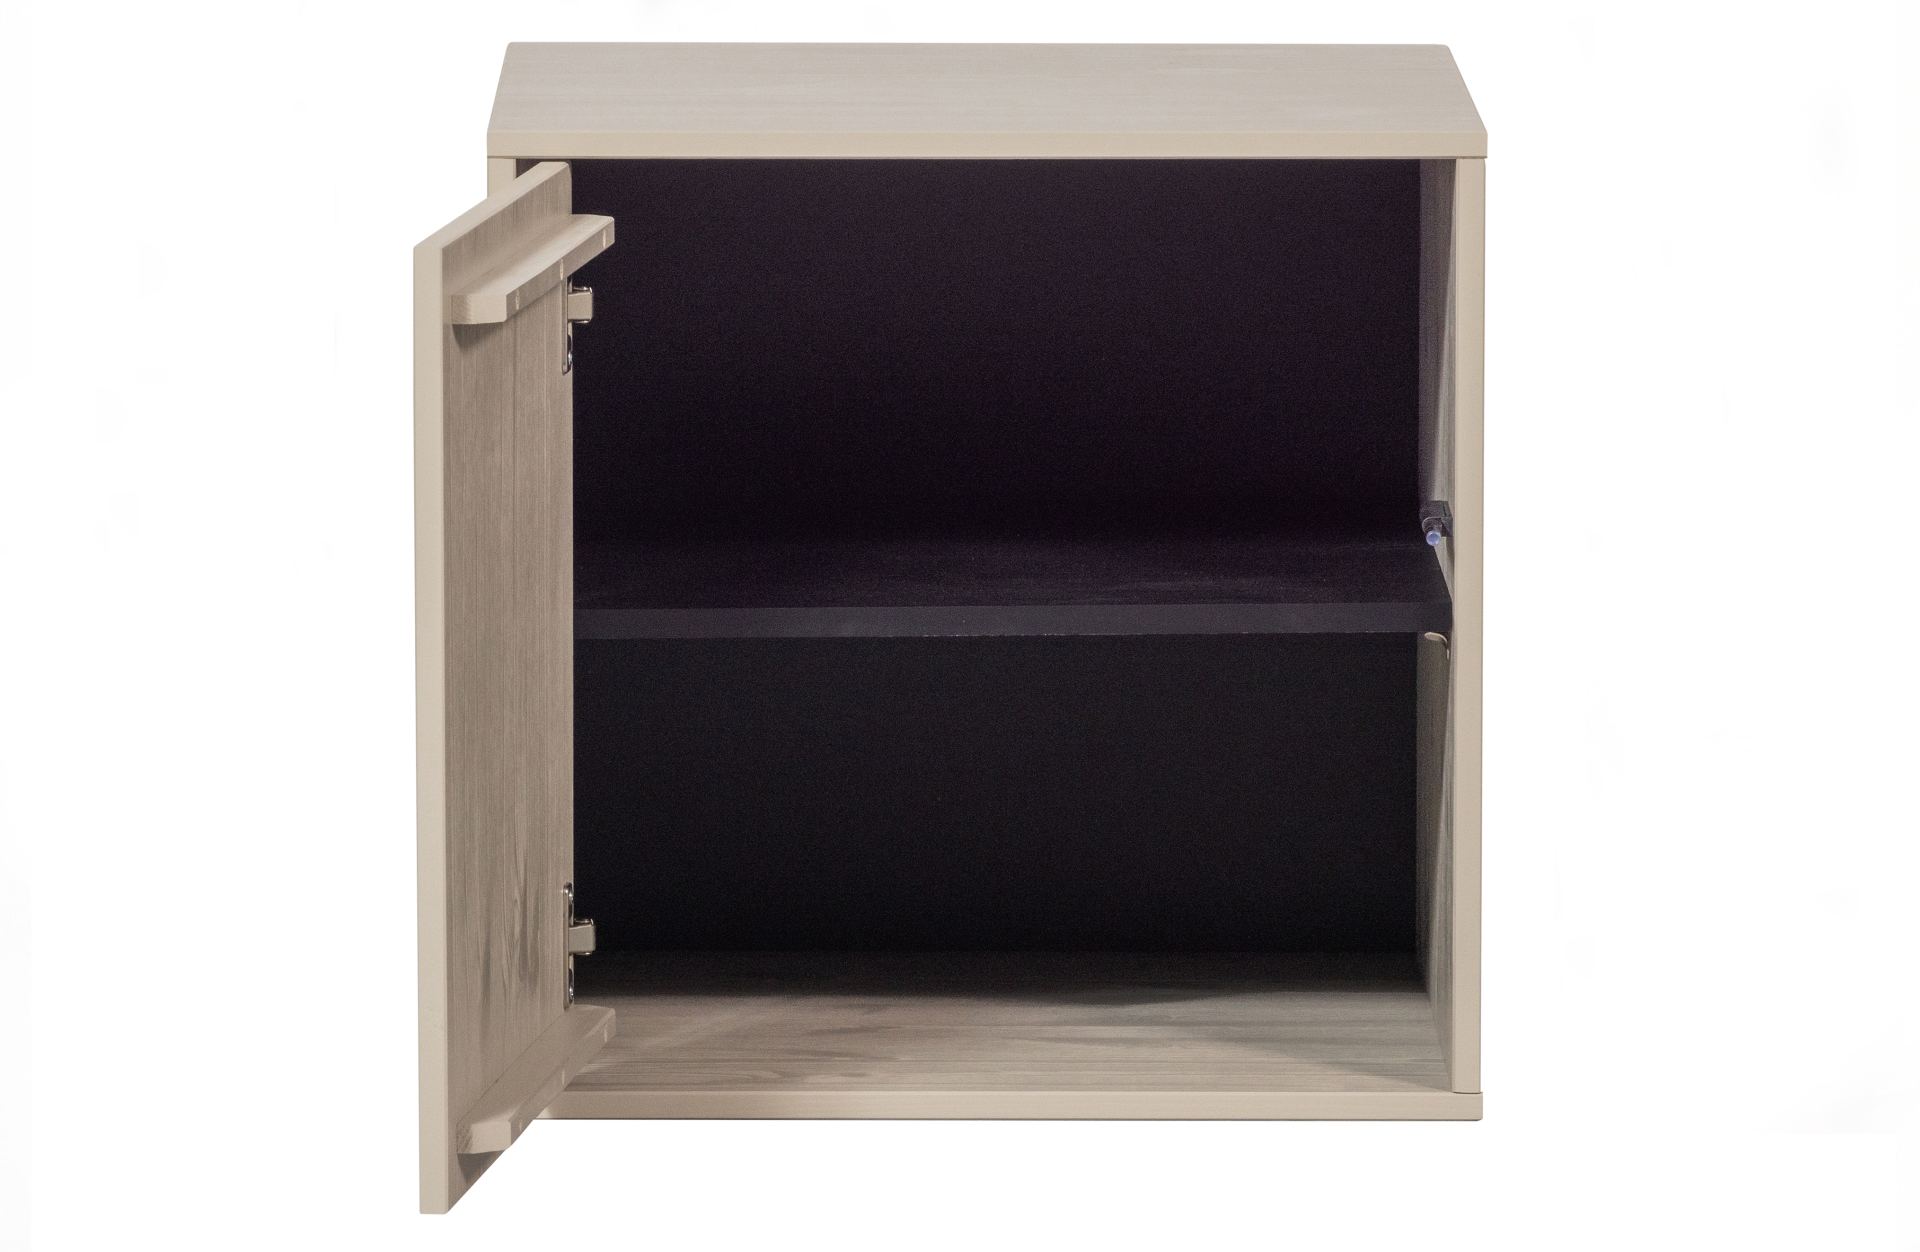 Der Modulschrank Daily Closet überzeugt mit seinem modernen Design. Gefertigt wurde er aus Kiefernholz, welches einen grauen Farbton besitzt. Der Schrank verfügt über eine Tür und hat eine Größe von 50x50 cm